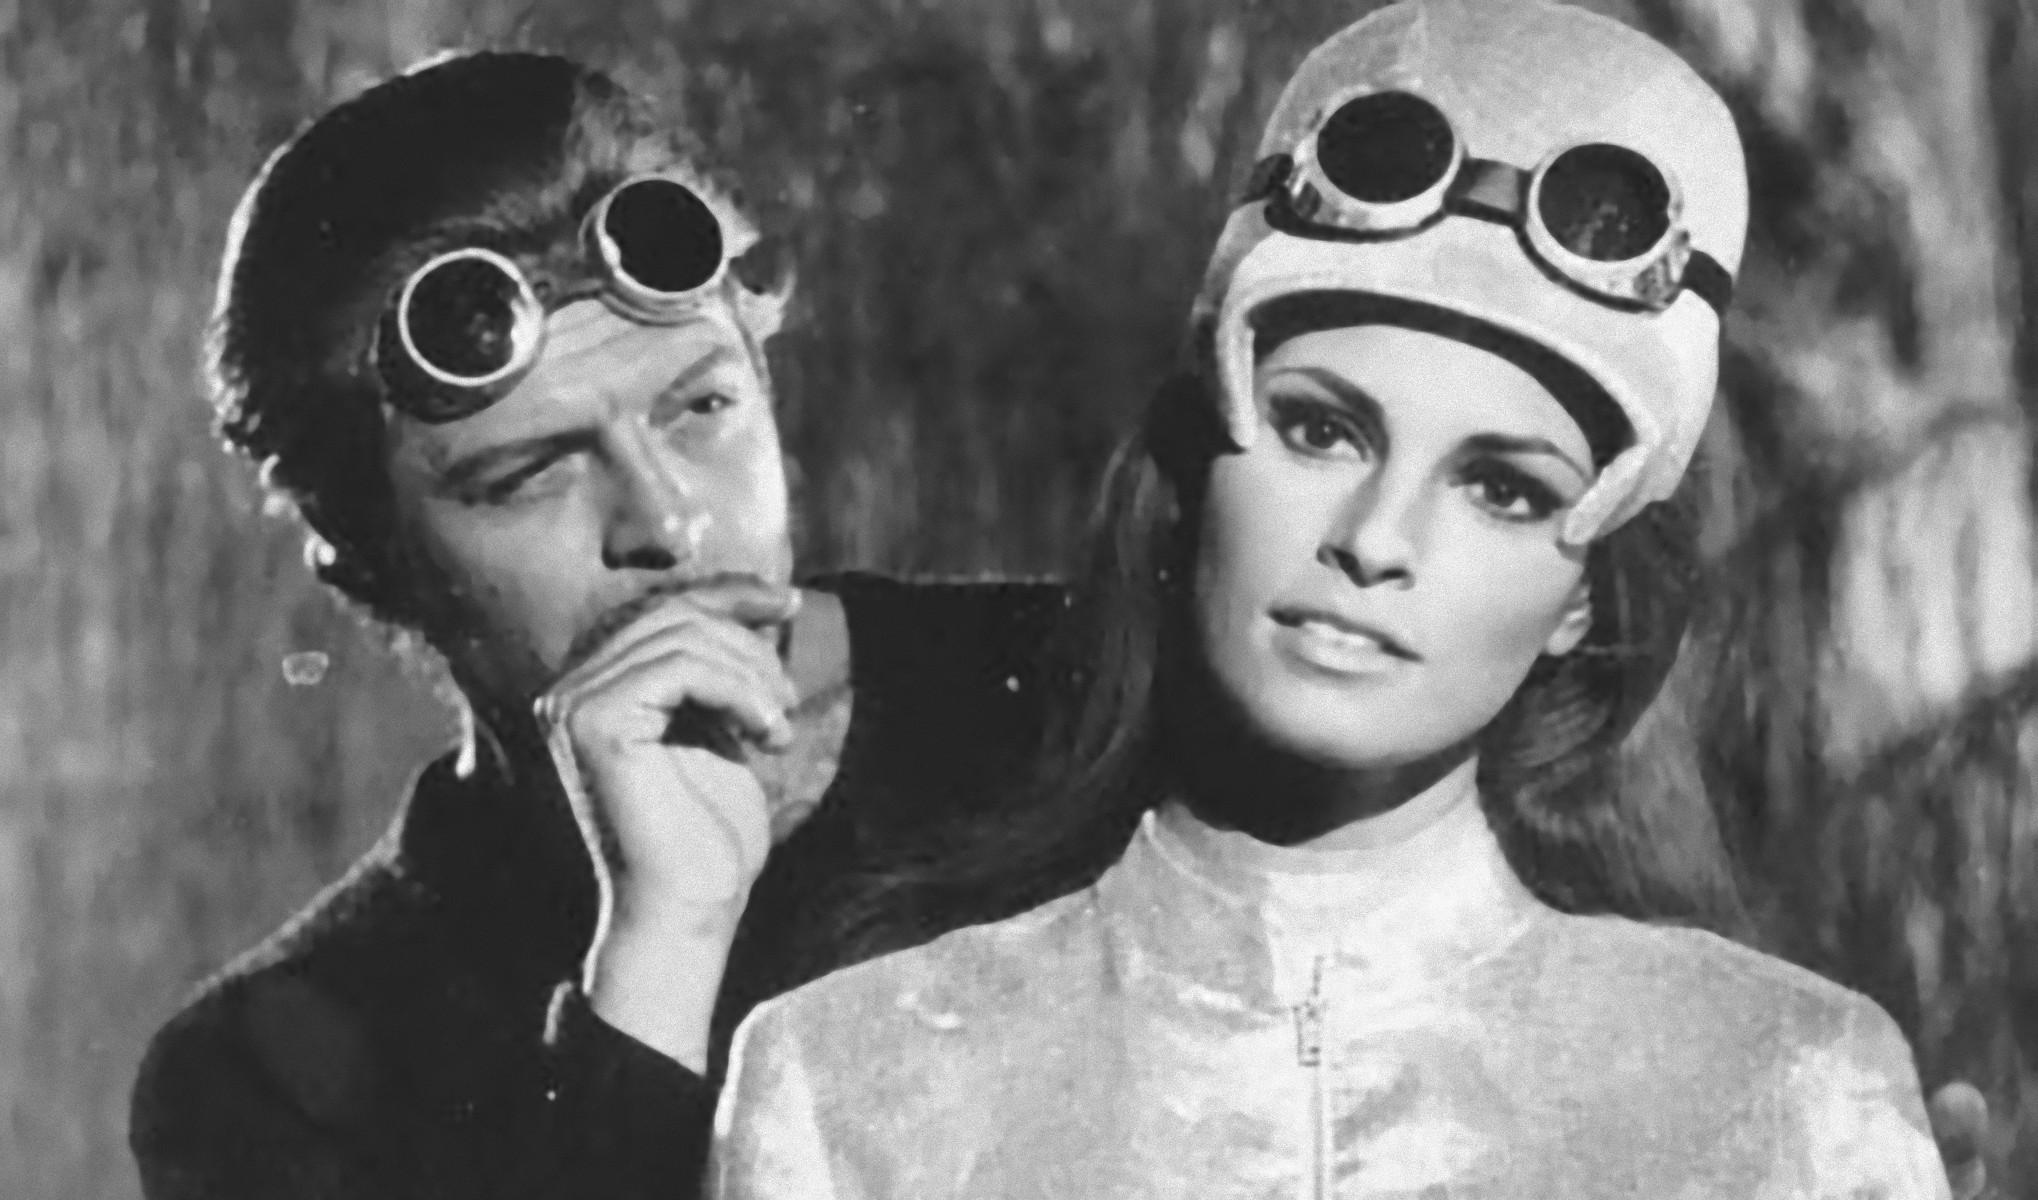 Marcello Mastroianni and Raquel Welch - Vintage b/w Photograph - 1966